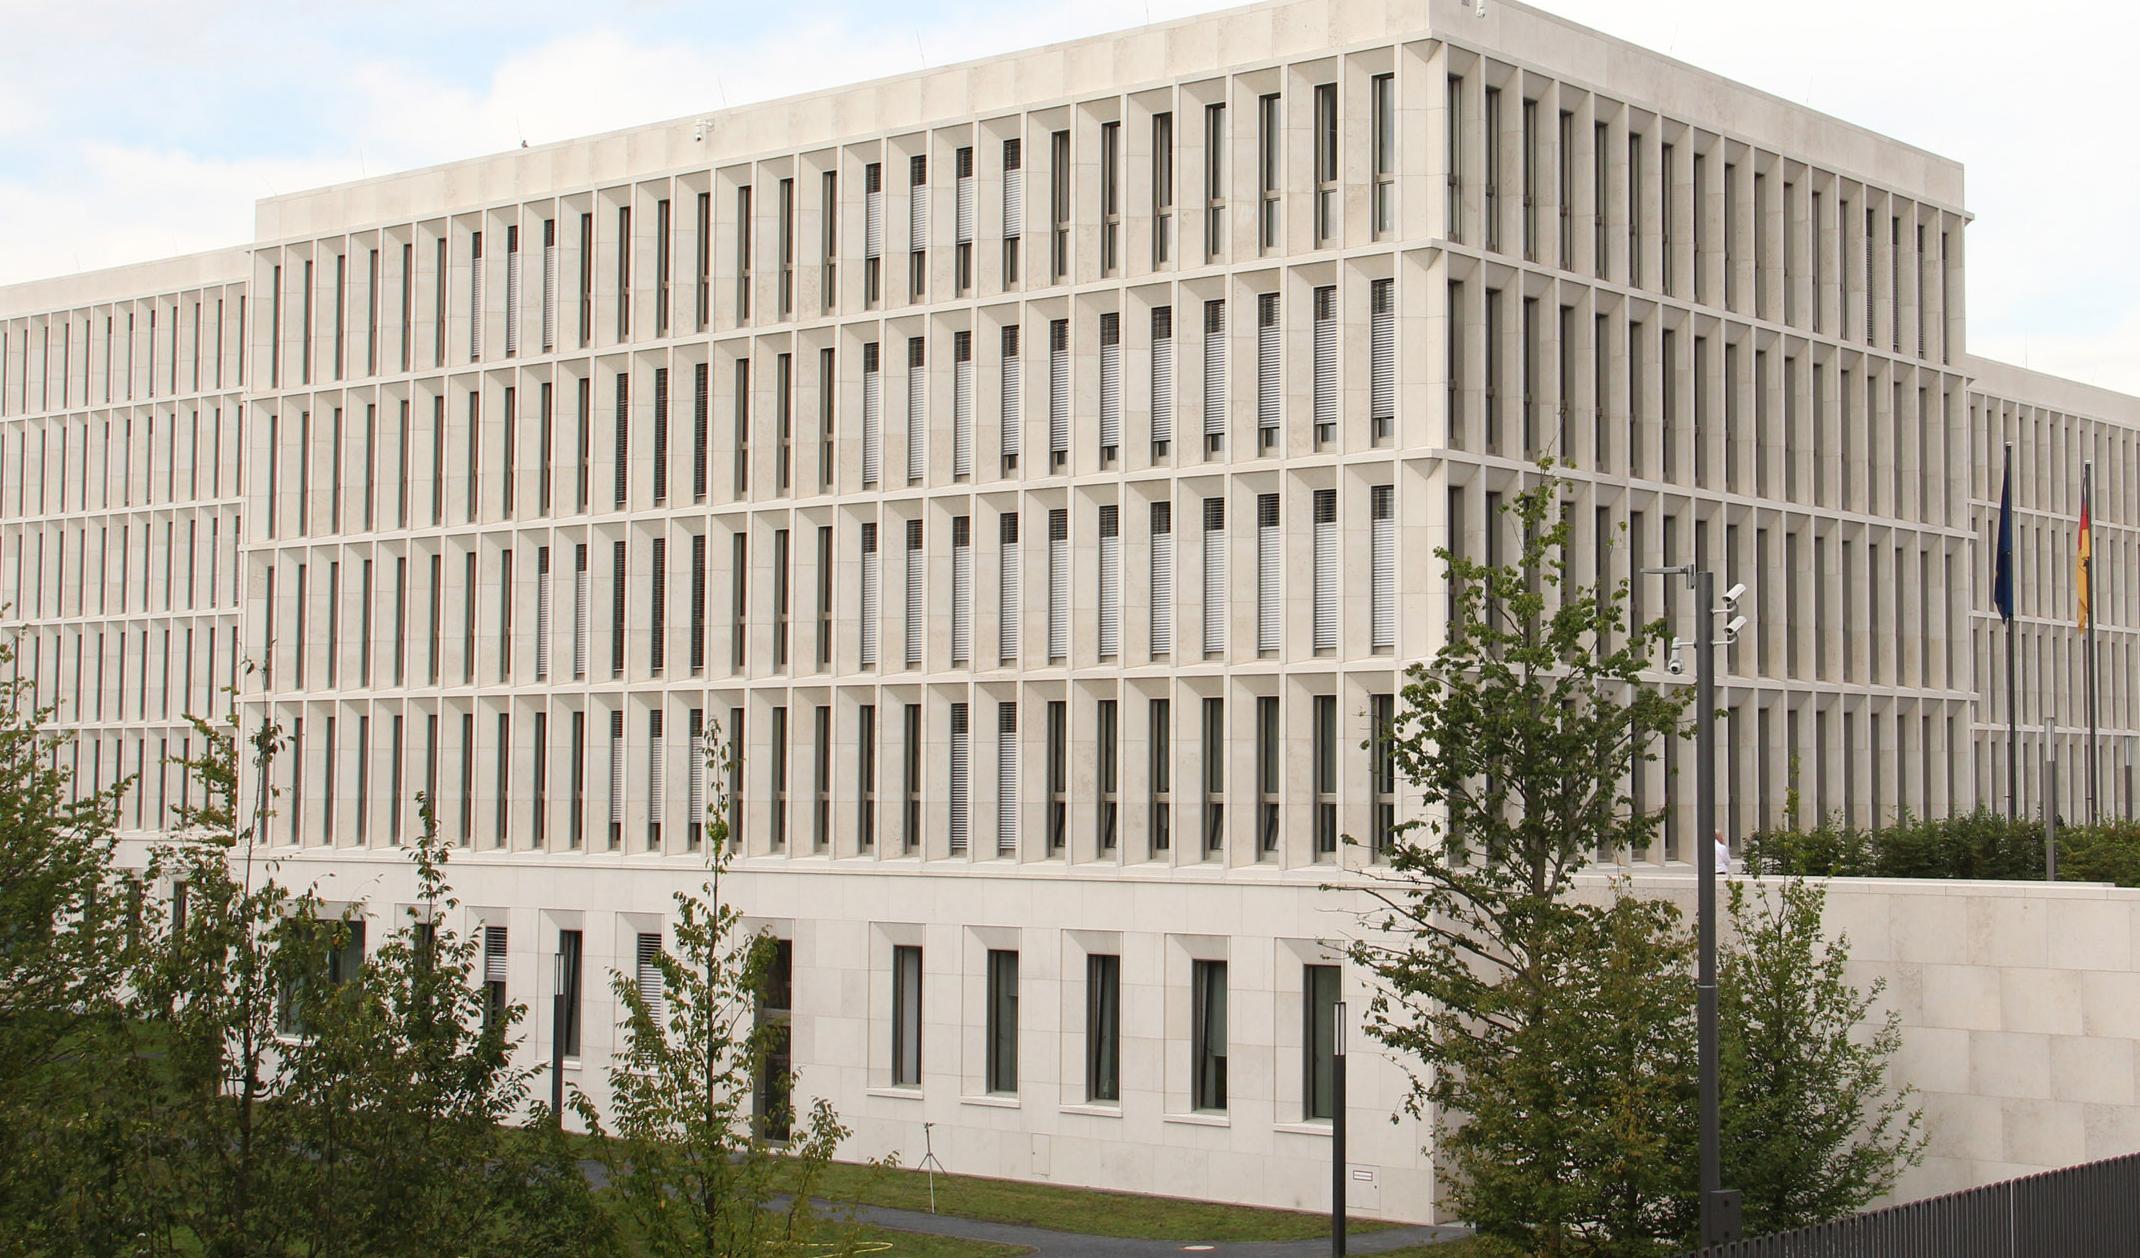 BEKA Referenz Bundesministerium des Innern, Berlin - Regierungsbau mit Heiz-/Kühldecken